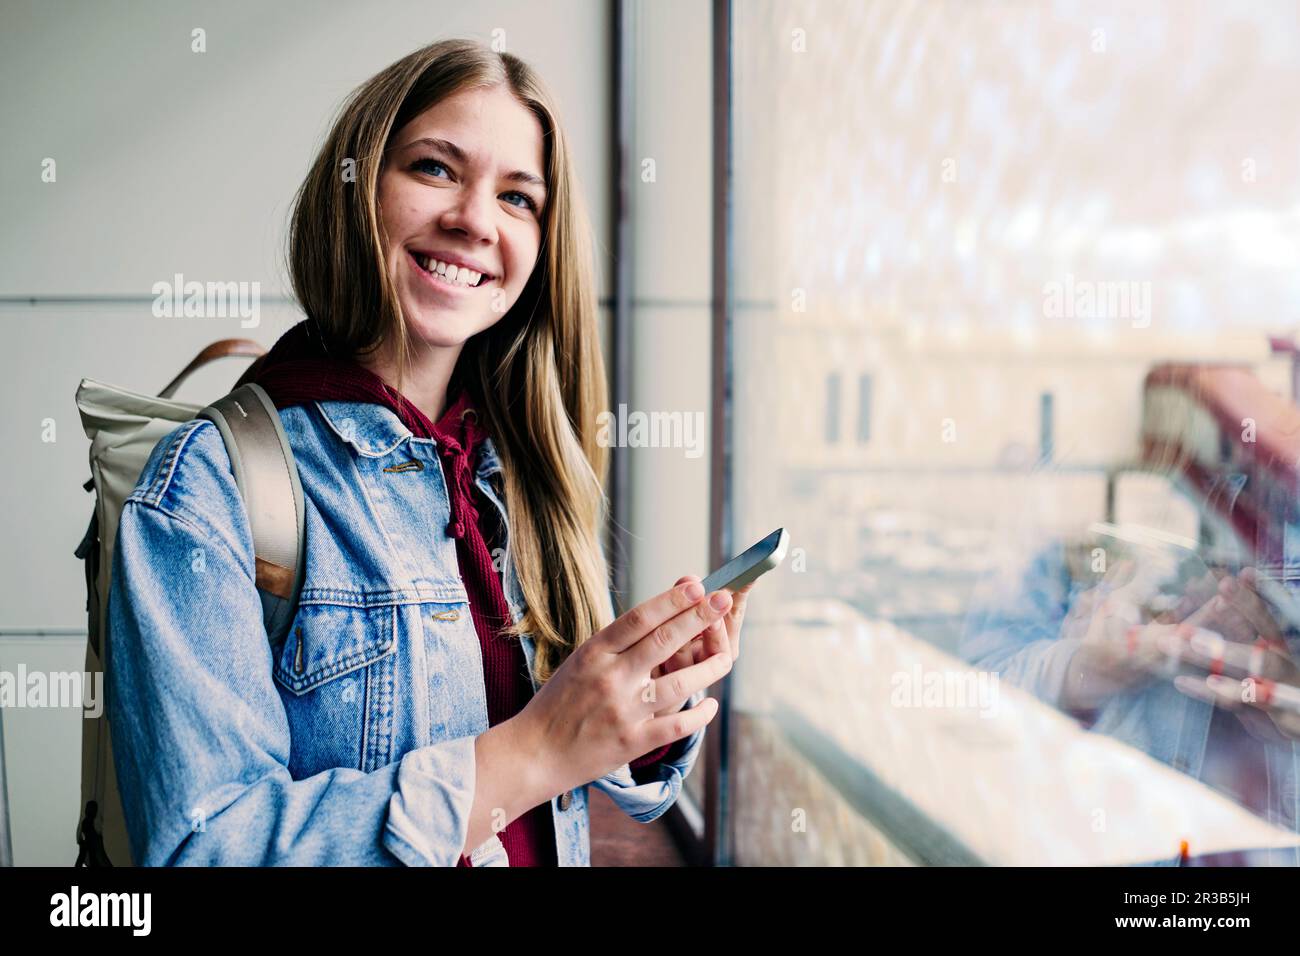 Lächelnde junge Frau, die am Flughafen ein Smartphone hält Stockfoto